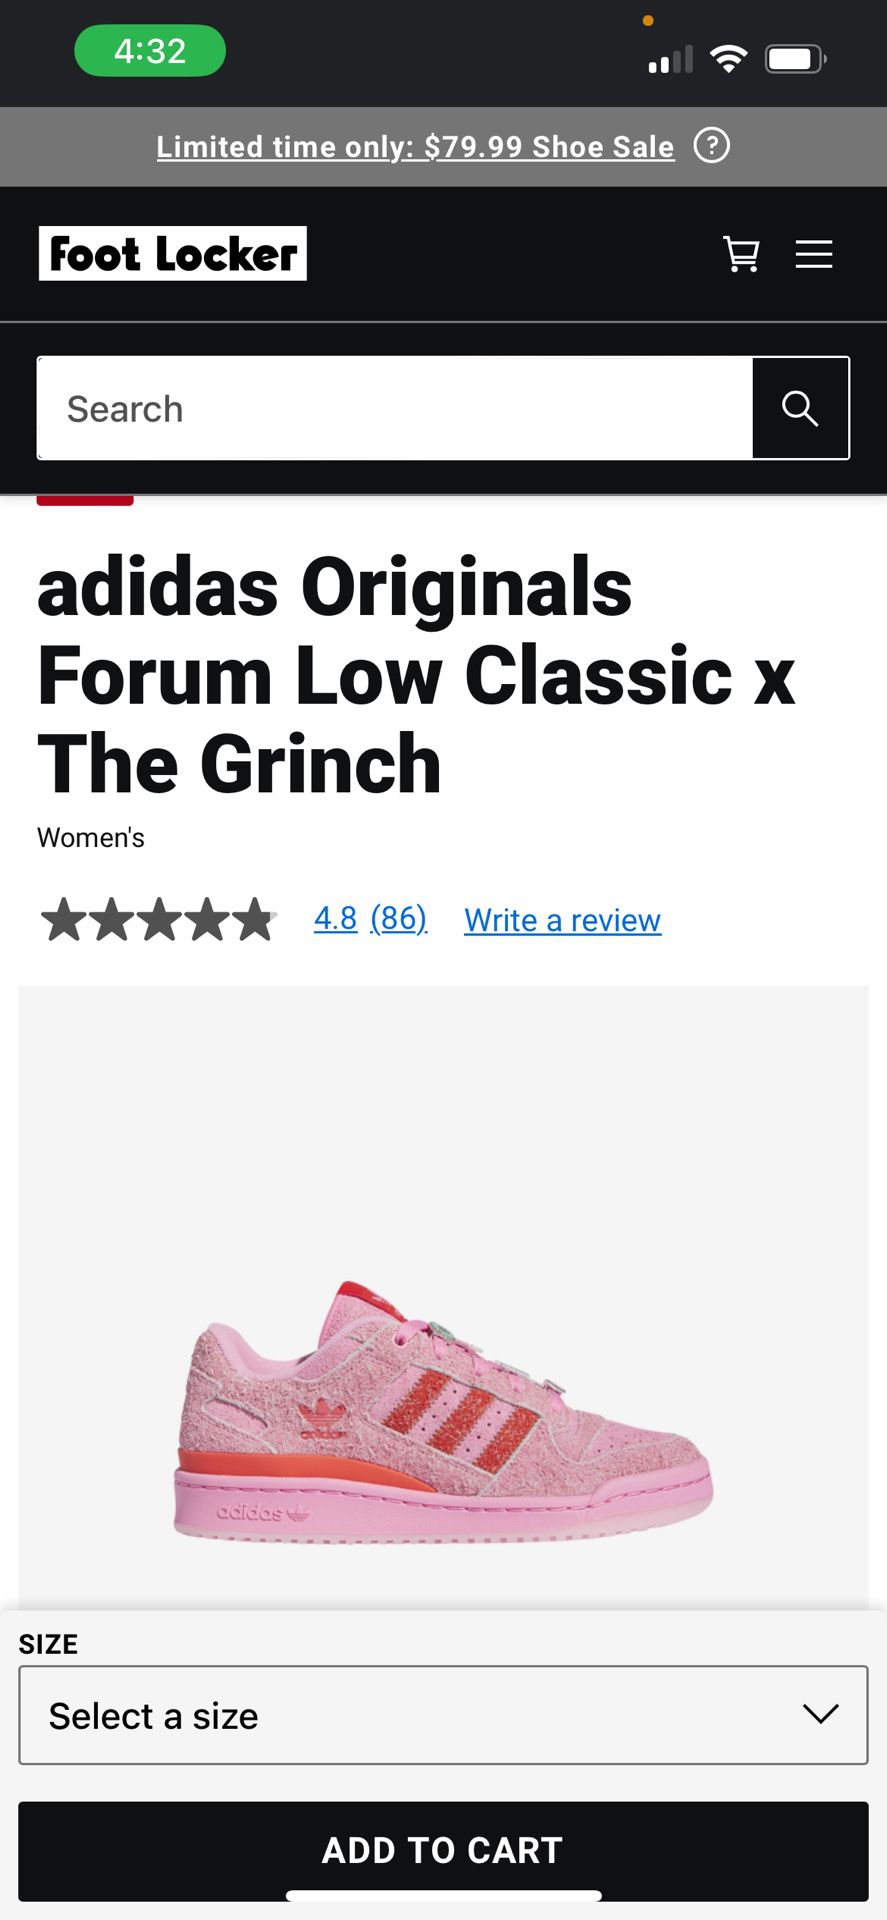 Grinch Limited Edition Adidas 